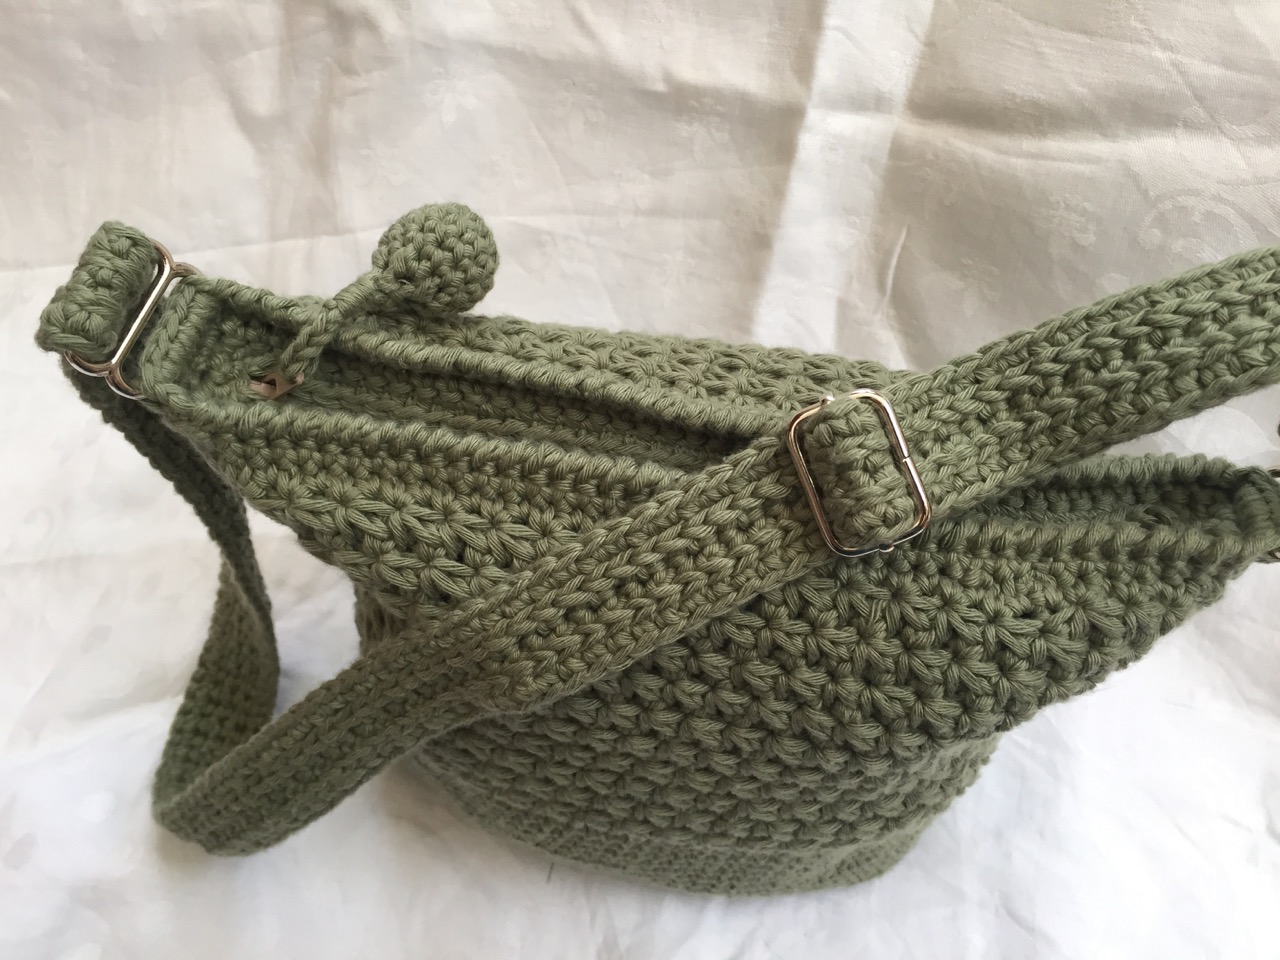 Le Blog de Frivole: Little Crochet Bag - Take Two